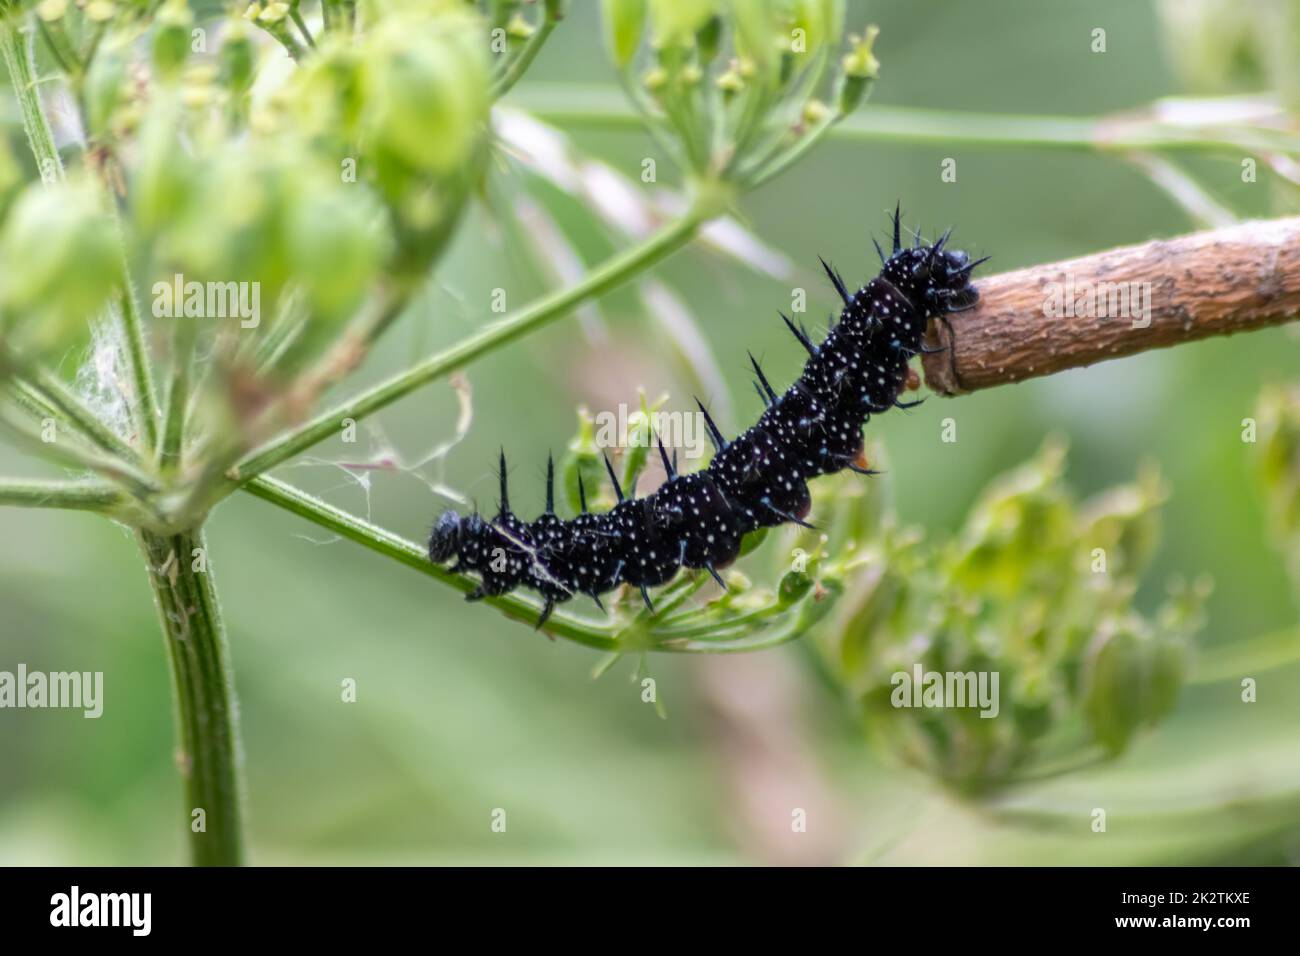 Il grande bruco nero con puntini bianchi, tentacoli neri e piedi arancioni è la bella grande larva della farfalla pavone che mangia foglie ed erba prima della mutazione in una farfalla tramite metamorfosi Foto Stock